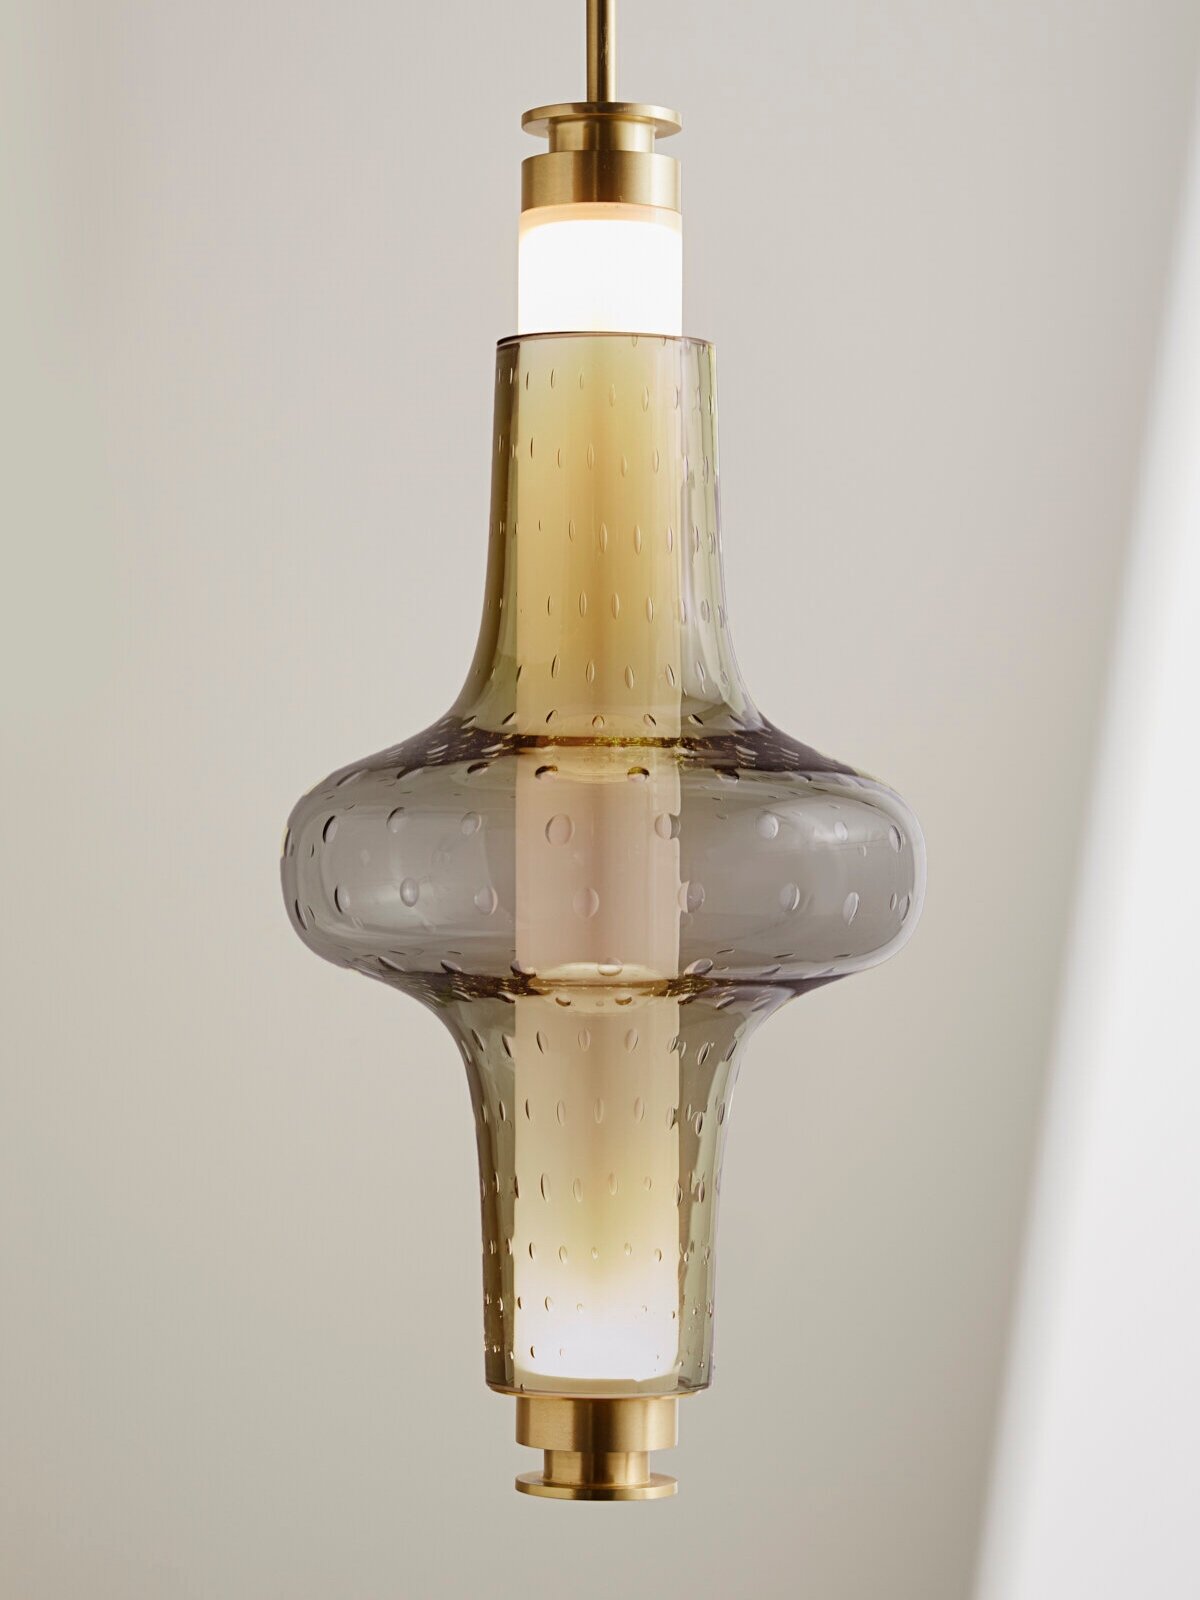 SMALL PENDANT OPTION C - WITH A DORADO GLASS BEAD